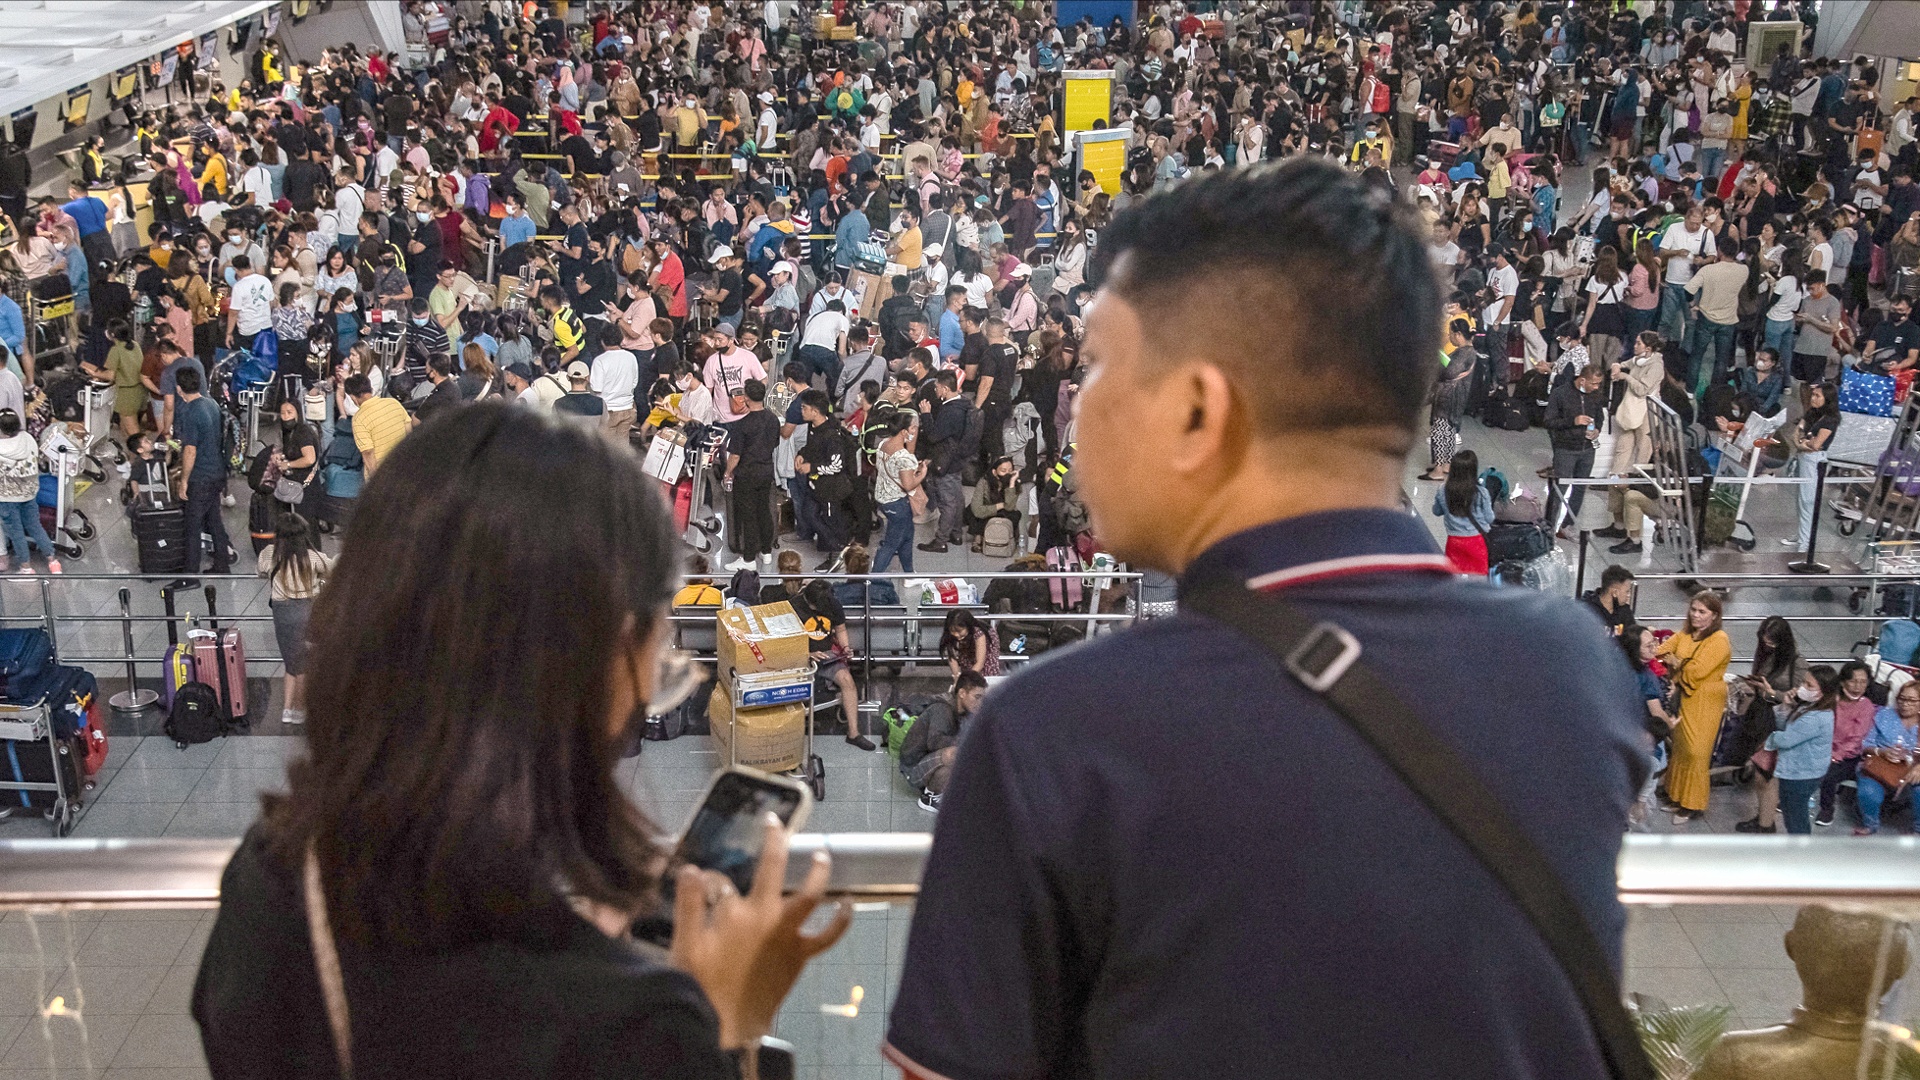 Новый год в аэропорту: в Маниле из-за перебоев со светом отменили сотни рейсов